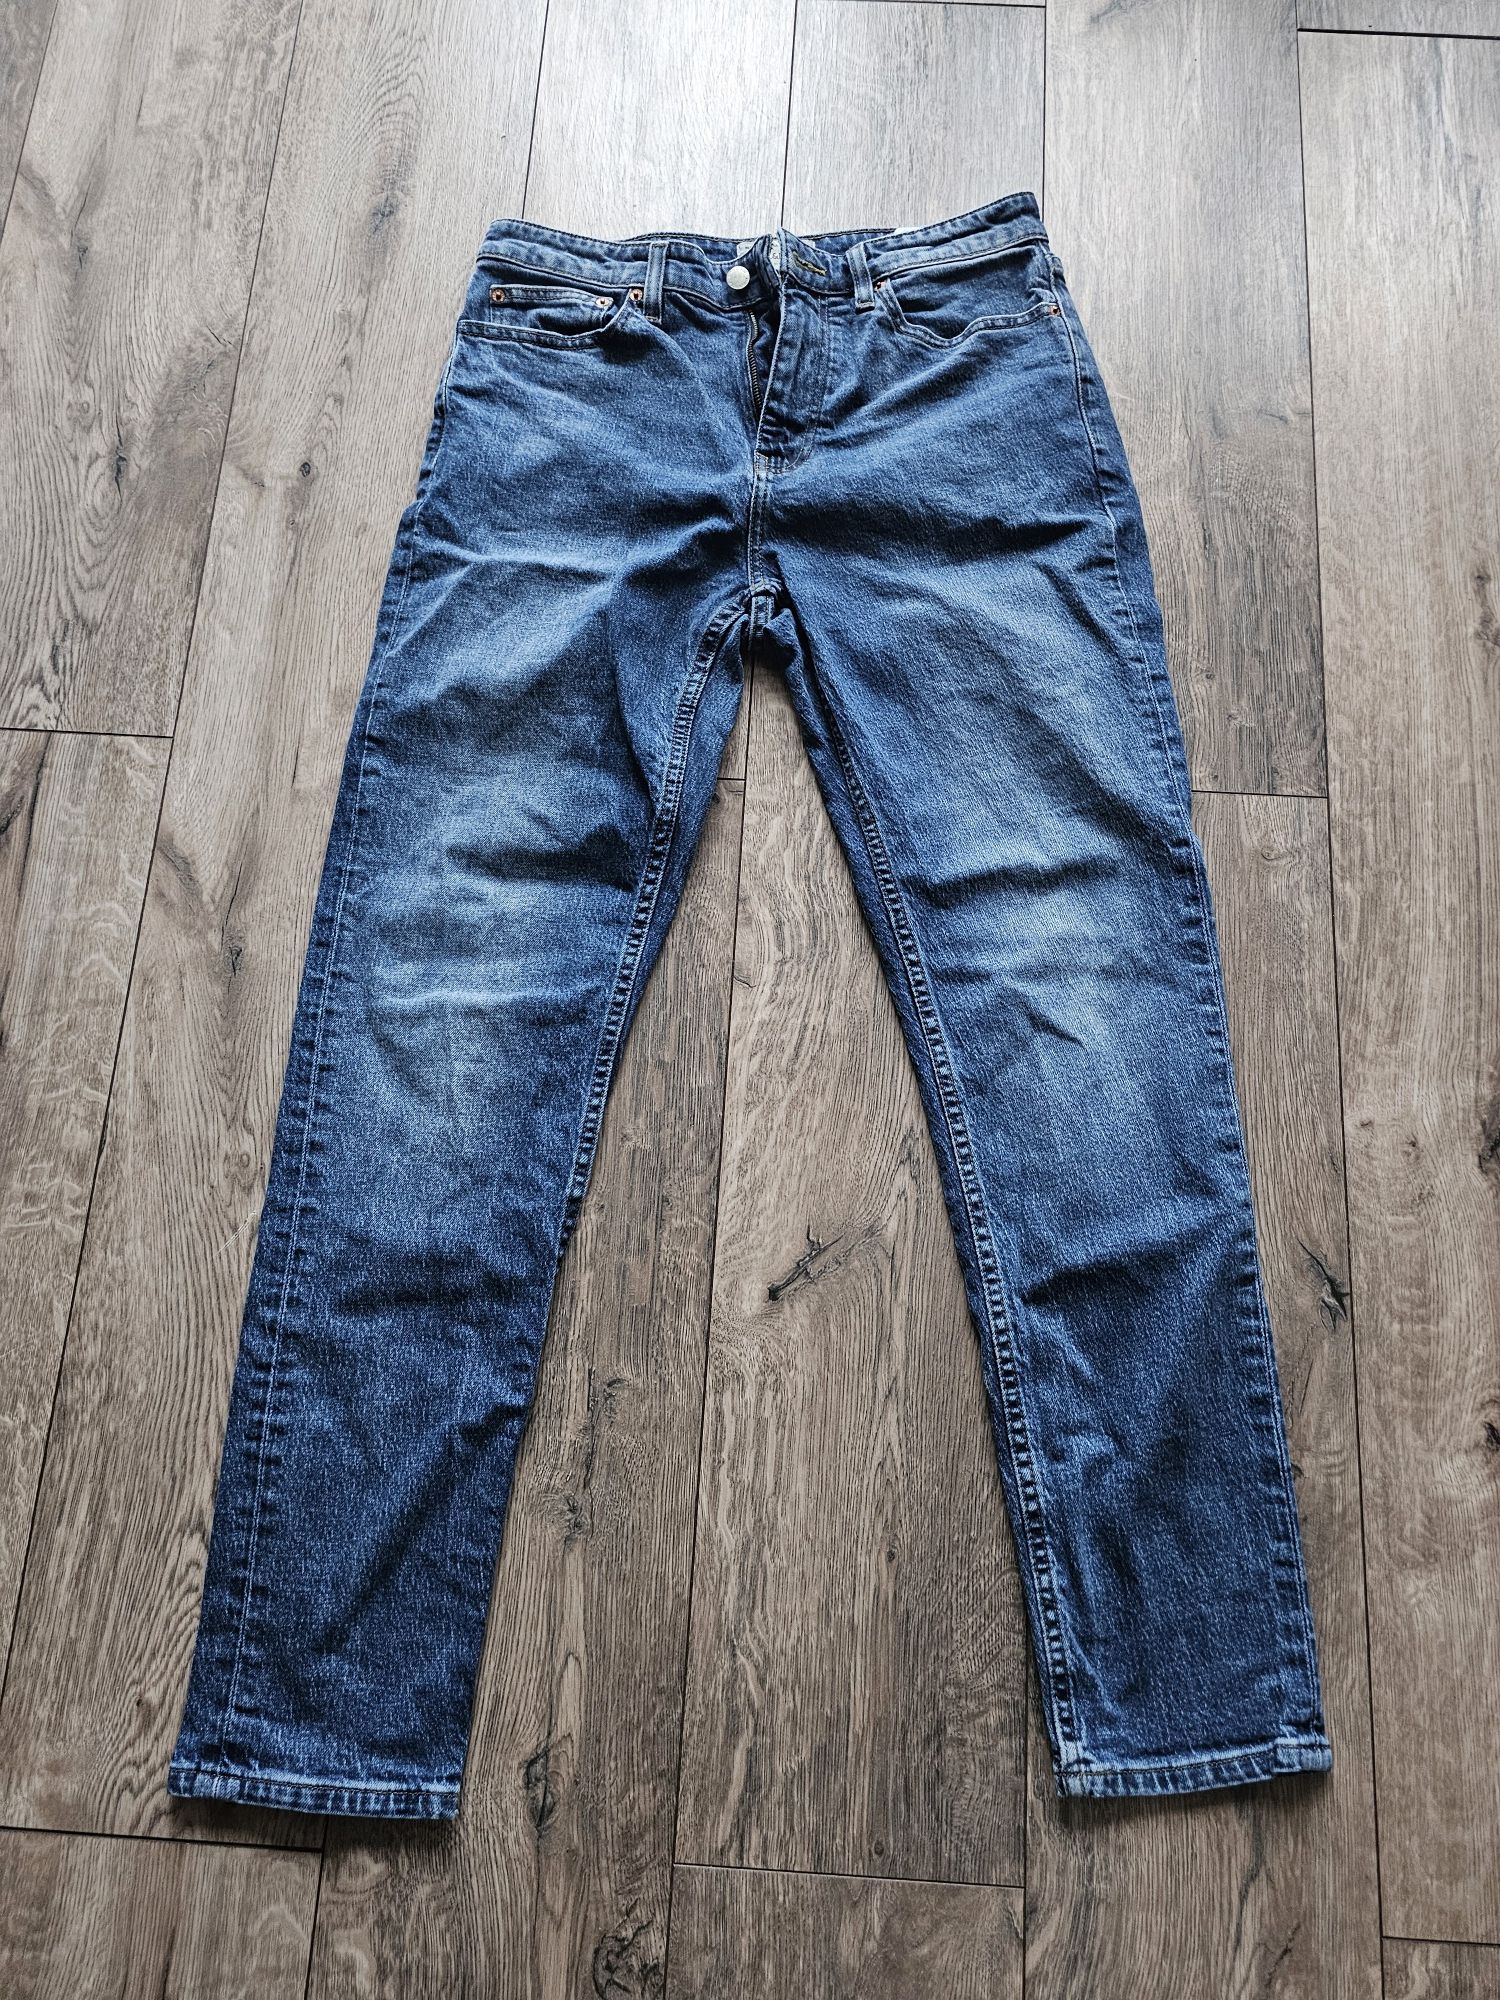 Spodnie, jeansy rozmiar w32 firma Pull&Bear